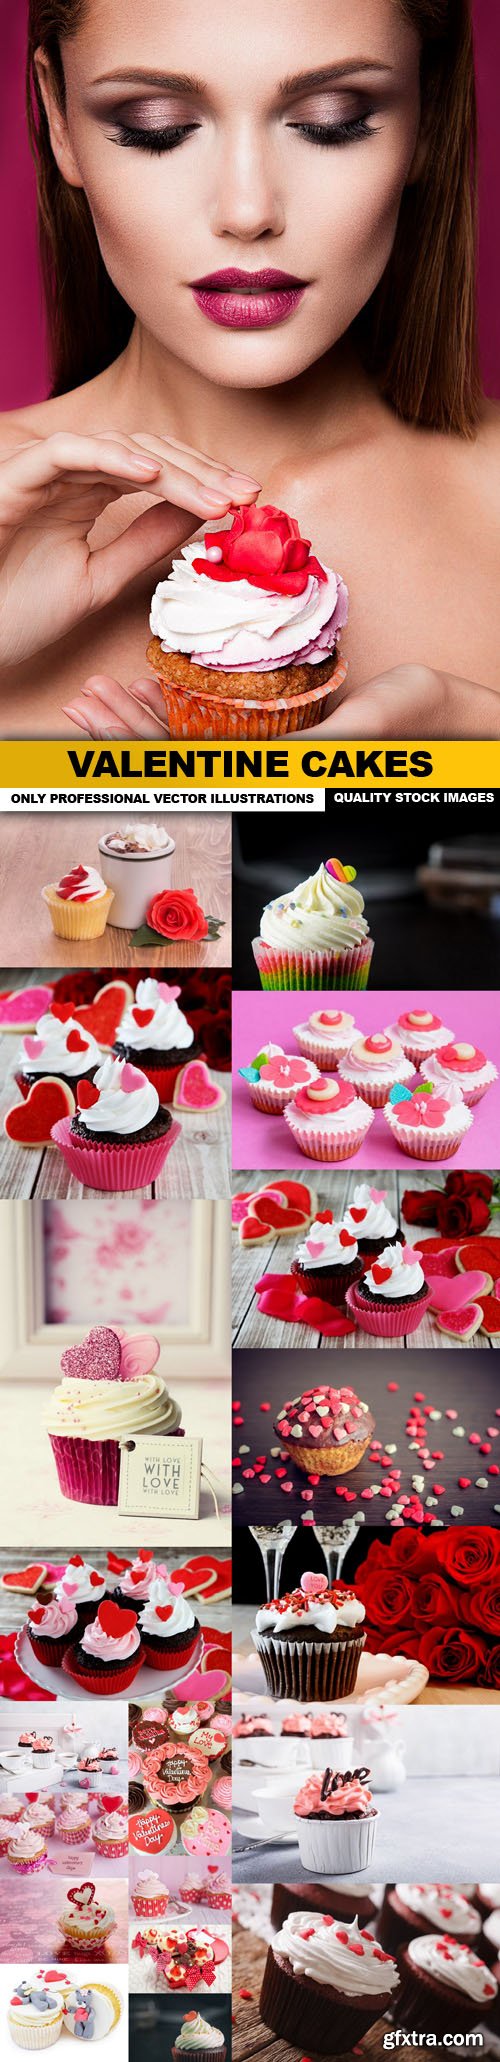 Valentine Cakes - 20 HQ Images